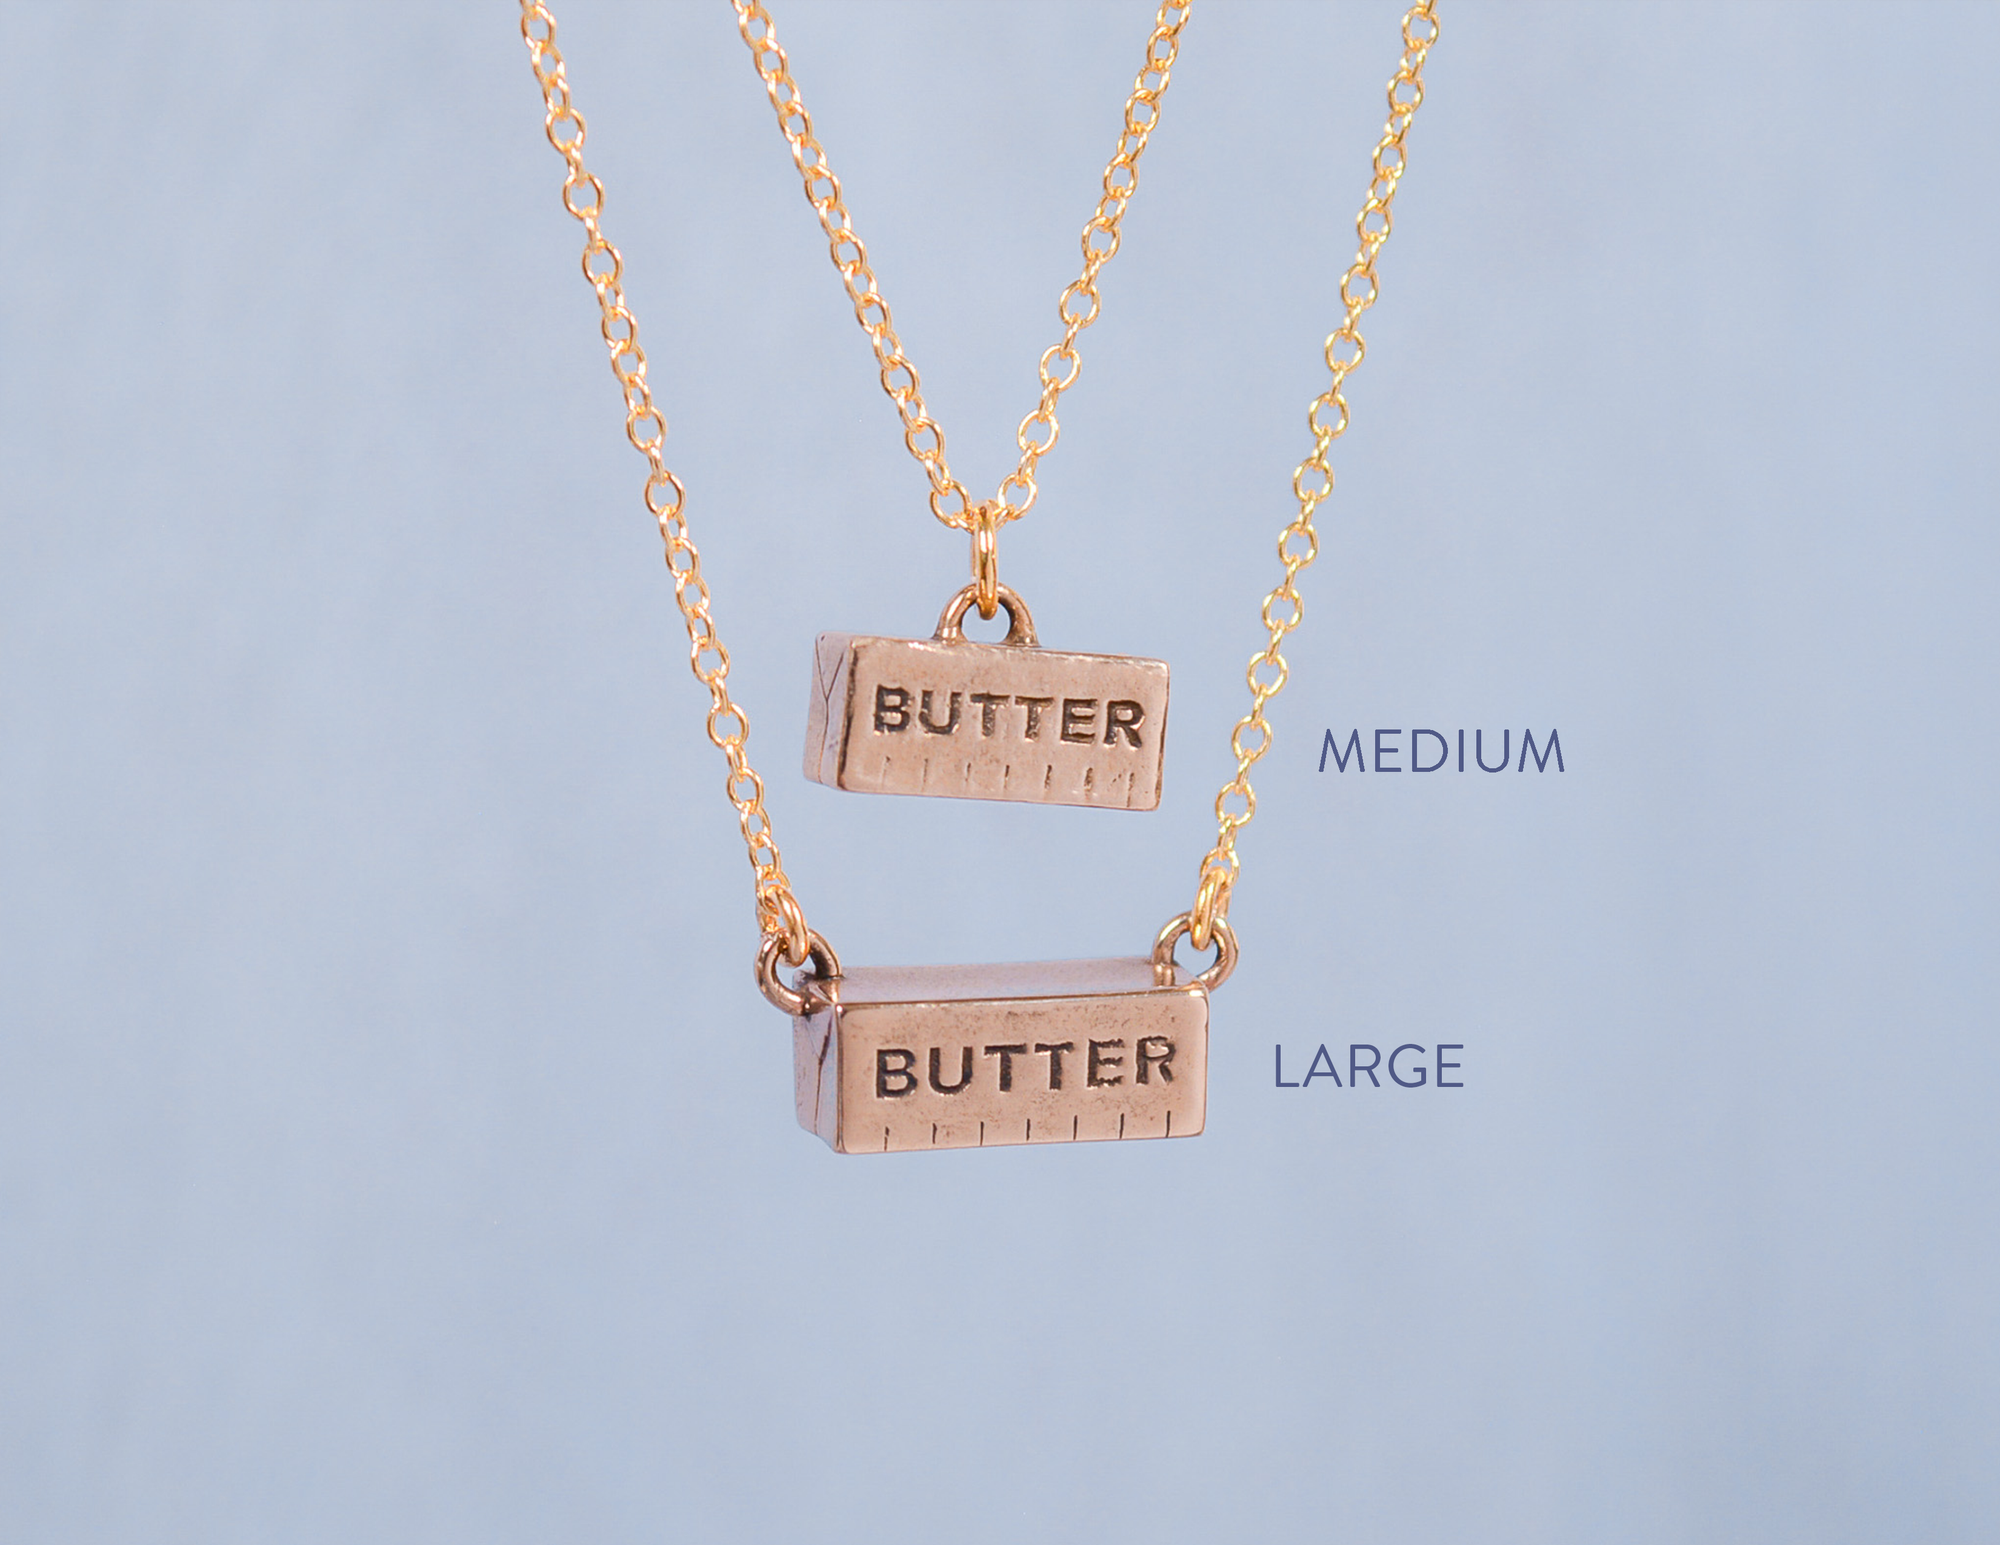 Butter Necklace - JUICE x Hannah Bartlett